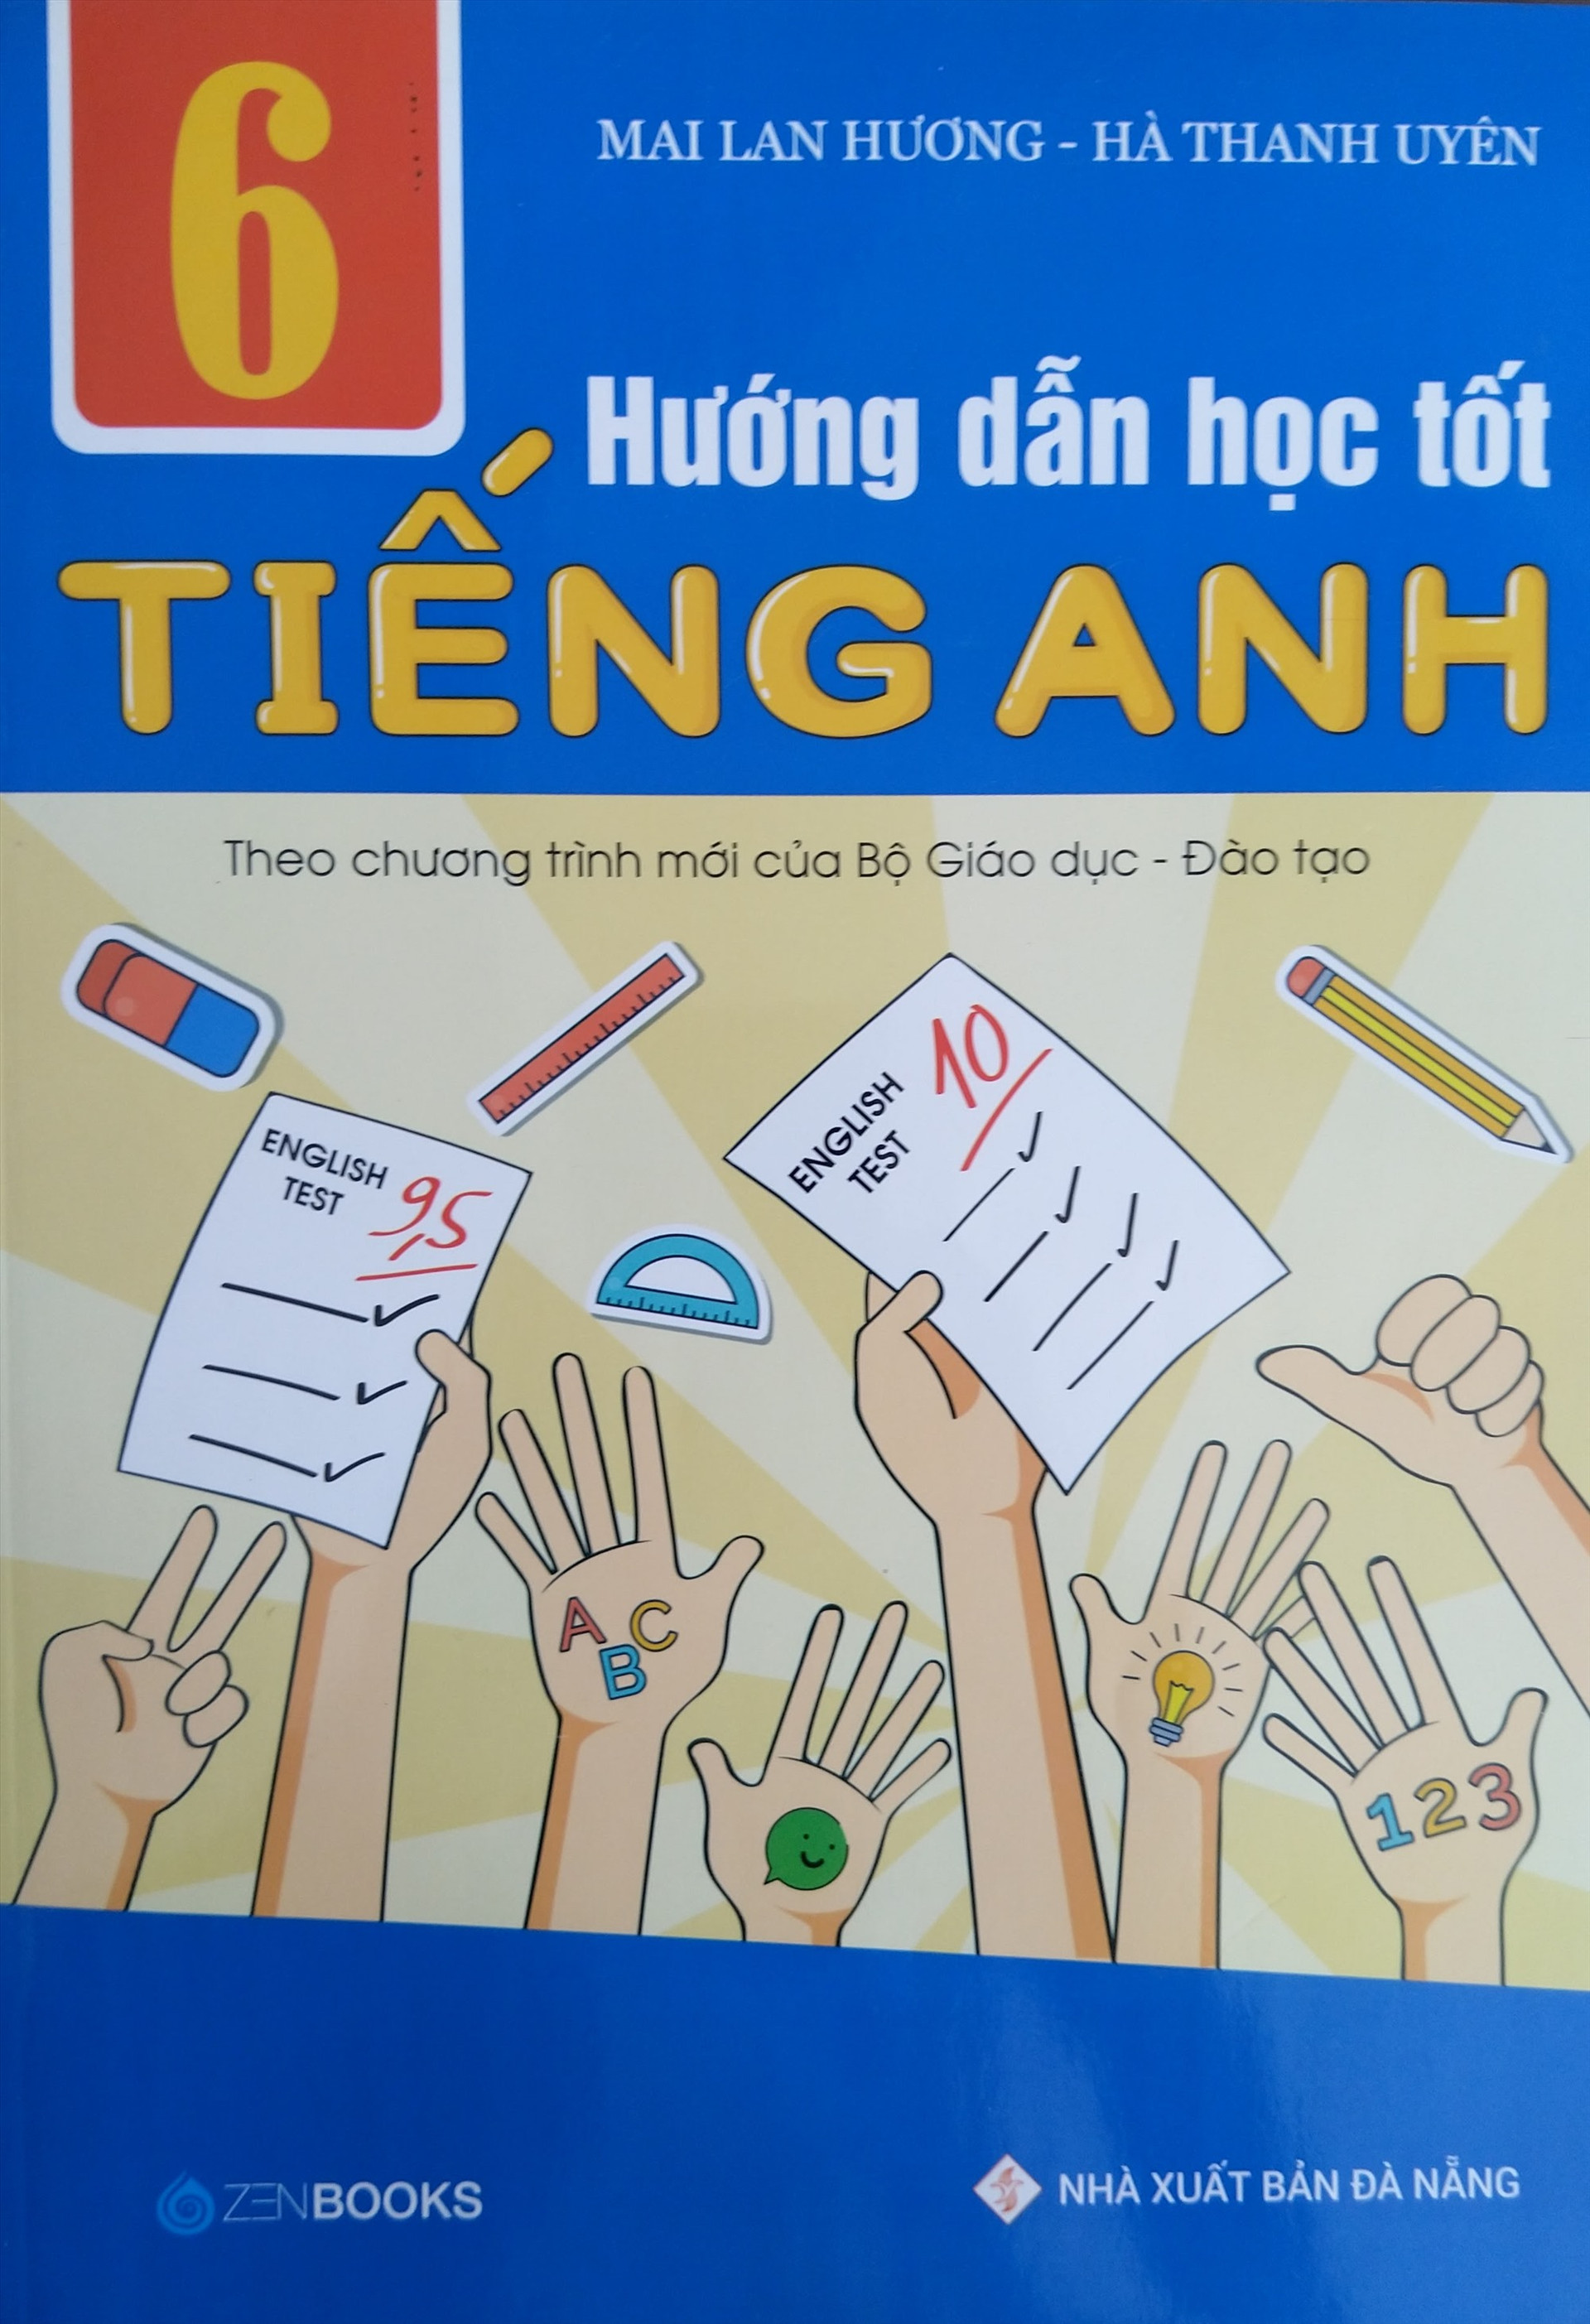 Sách Hướng dẫn học tốt tiếng Anh lớp 6 của Mai Lan Hương và đồng nghiệp. Ảnh: T.N.N